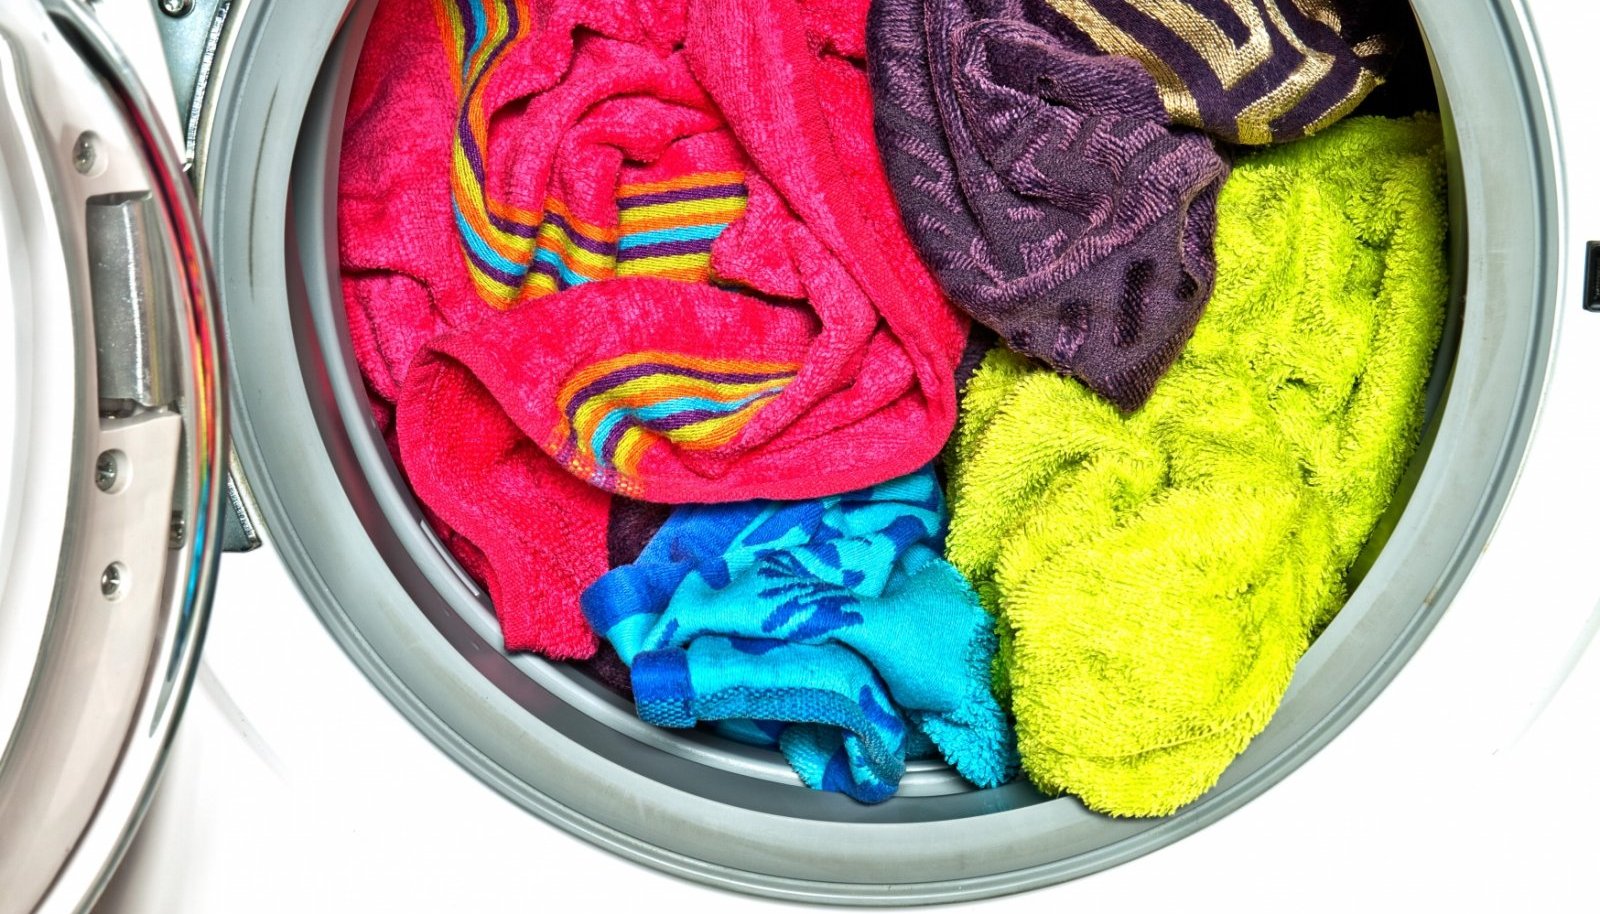 Неприятный запах полотенец. Цветные вещи. Мятое белье в машинке. Вонючее полотенце. Одежда после стирки пахнет затхлостью.